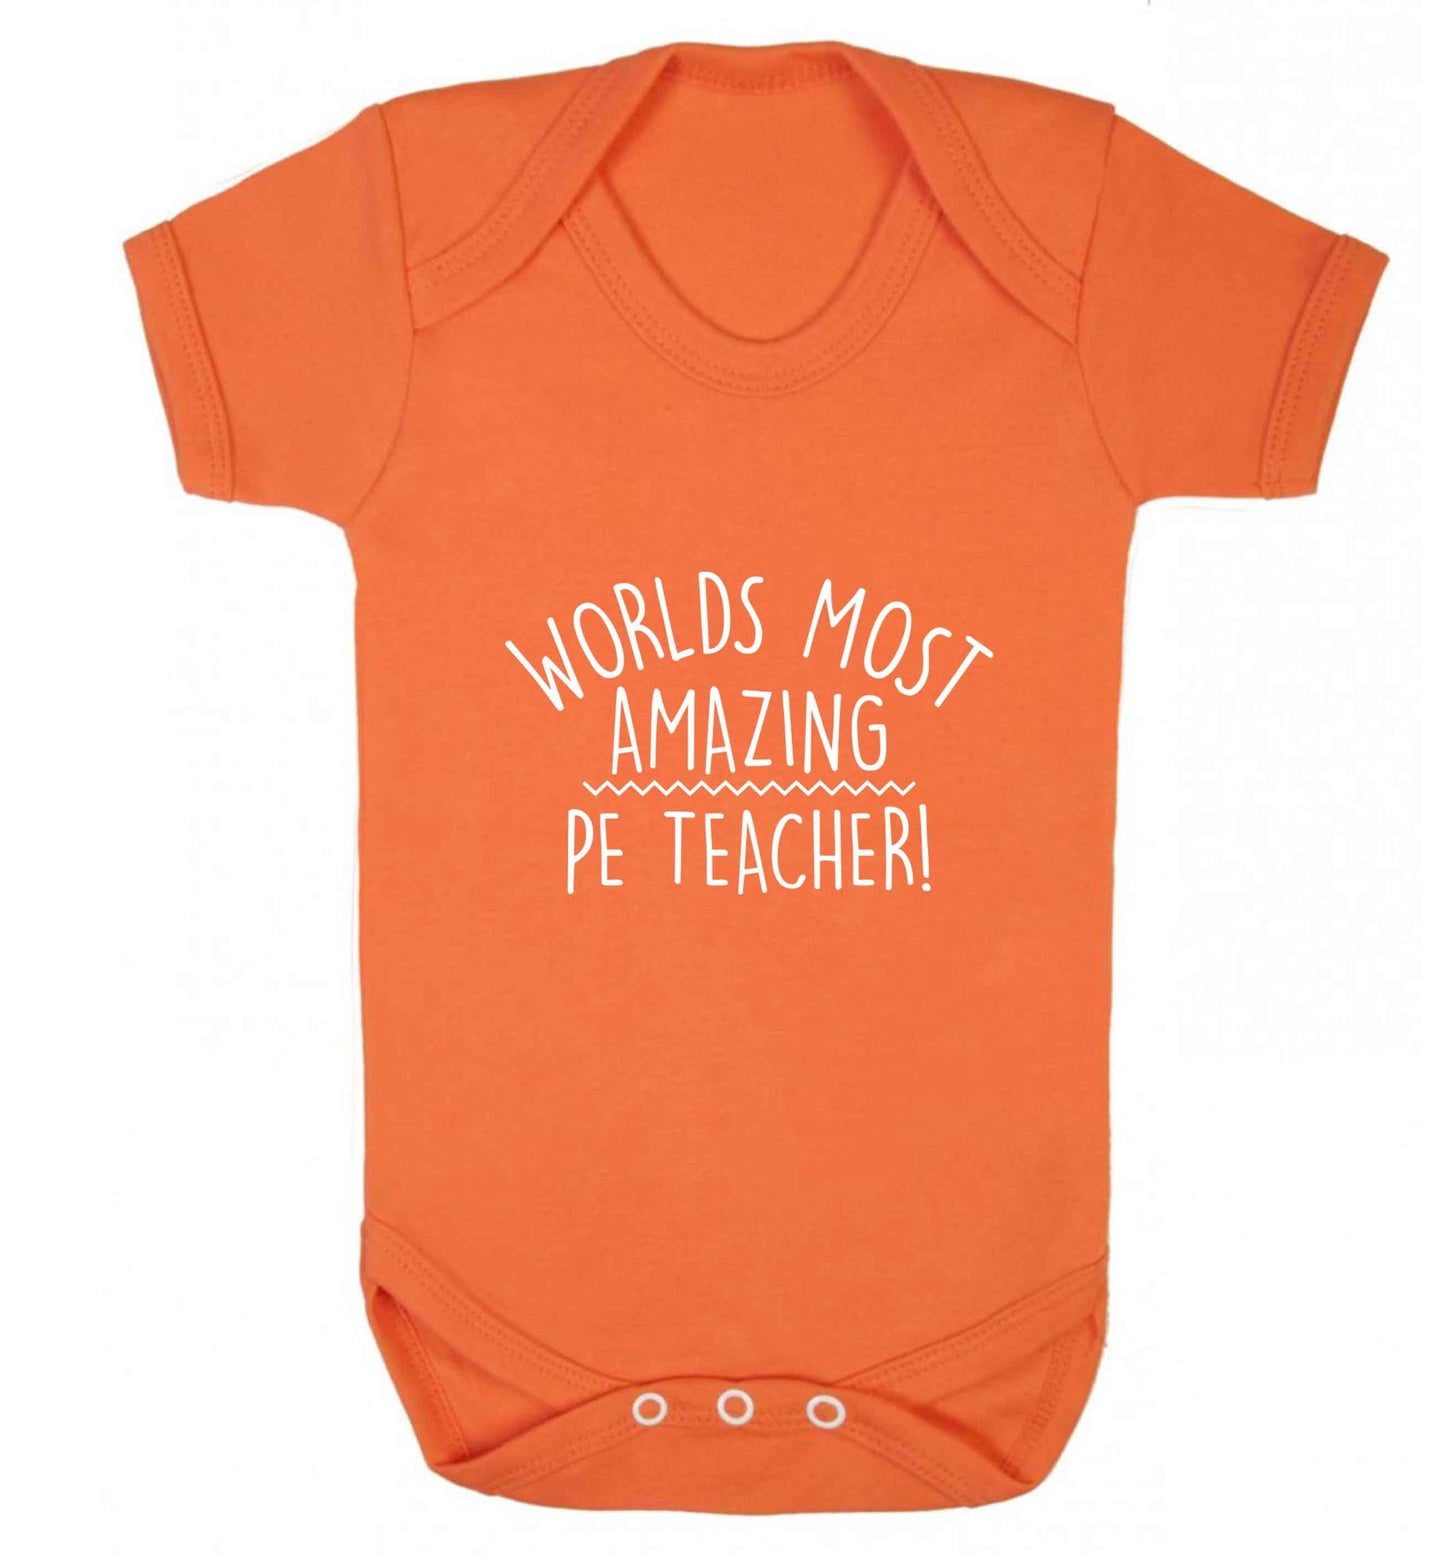 Worlds most amazing PE teacher baby vest orange 18-24 months